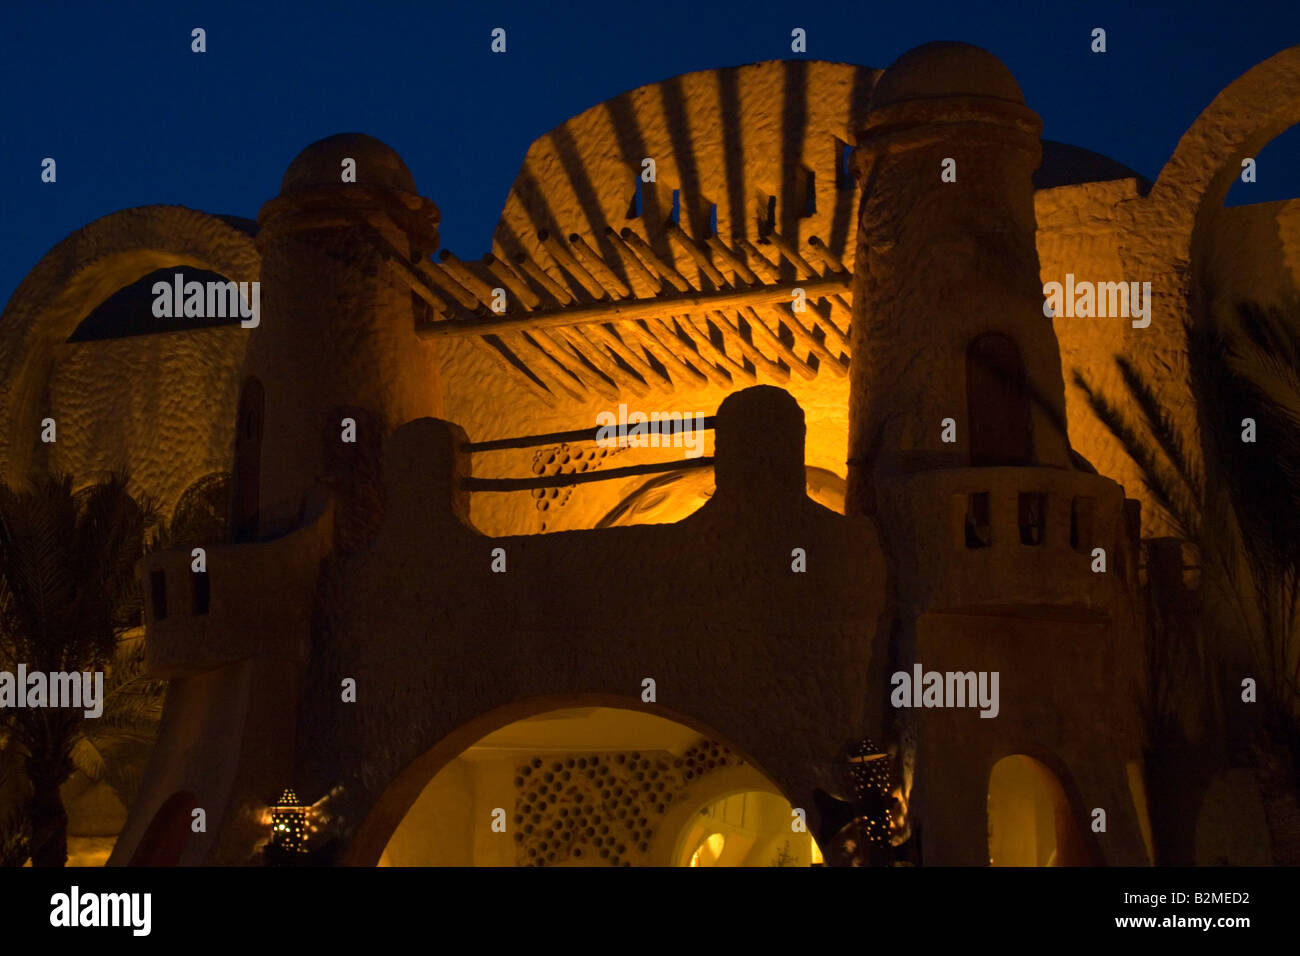 Castillo de estilo árabe iluminado por luces de noche en África, Túnez. Foto de stock